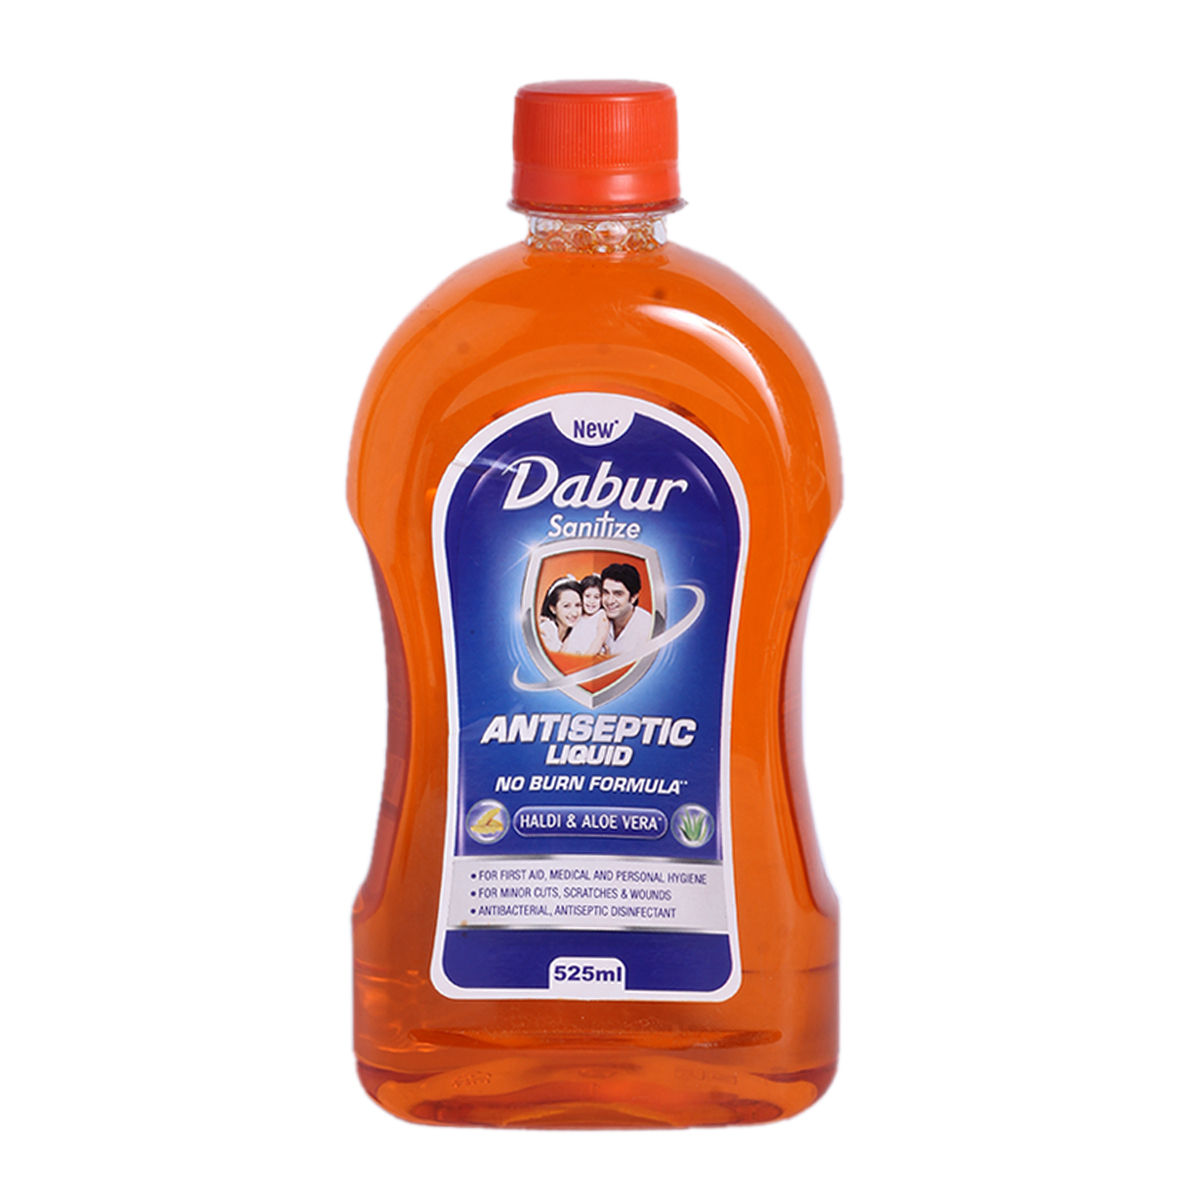 Buy Dabur Sanitize Antiseptic Liquid, 525 ml Online